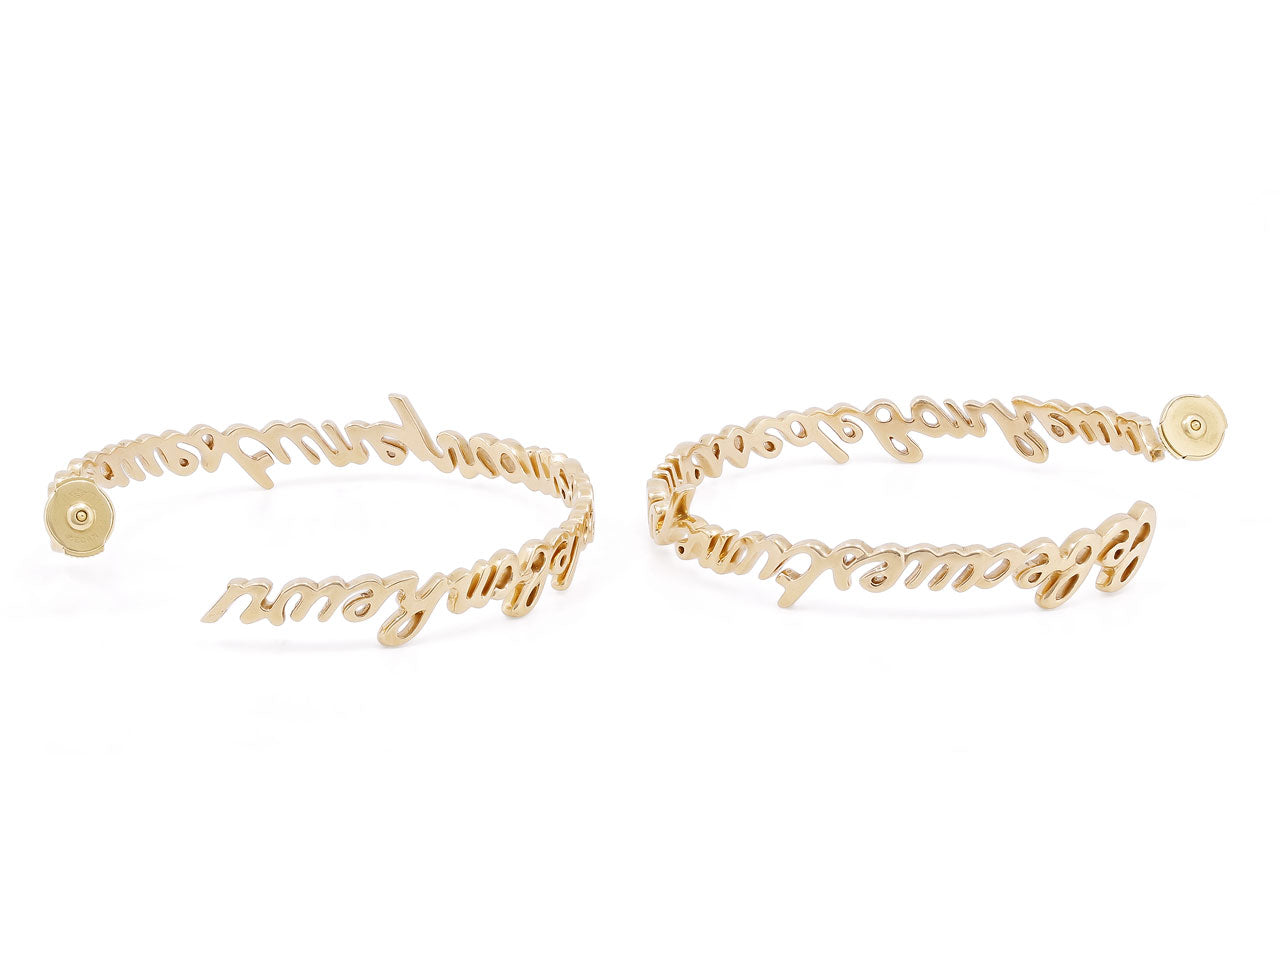 Lorenz Baumer Hoop Earrings in 18K Rose Gold